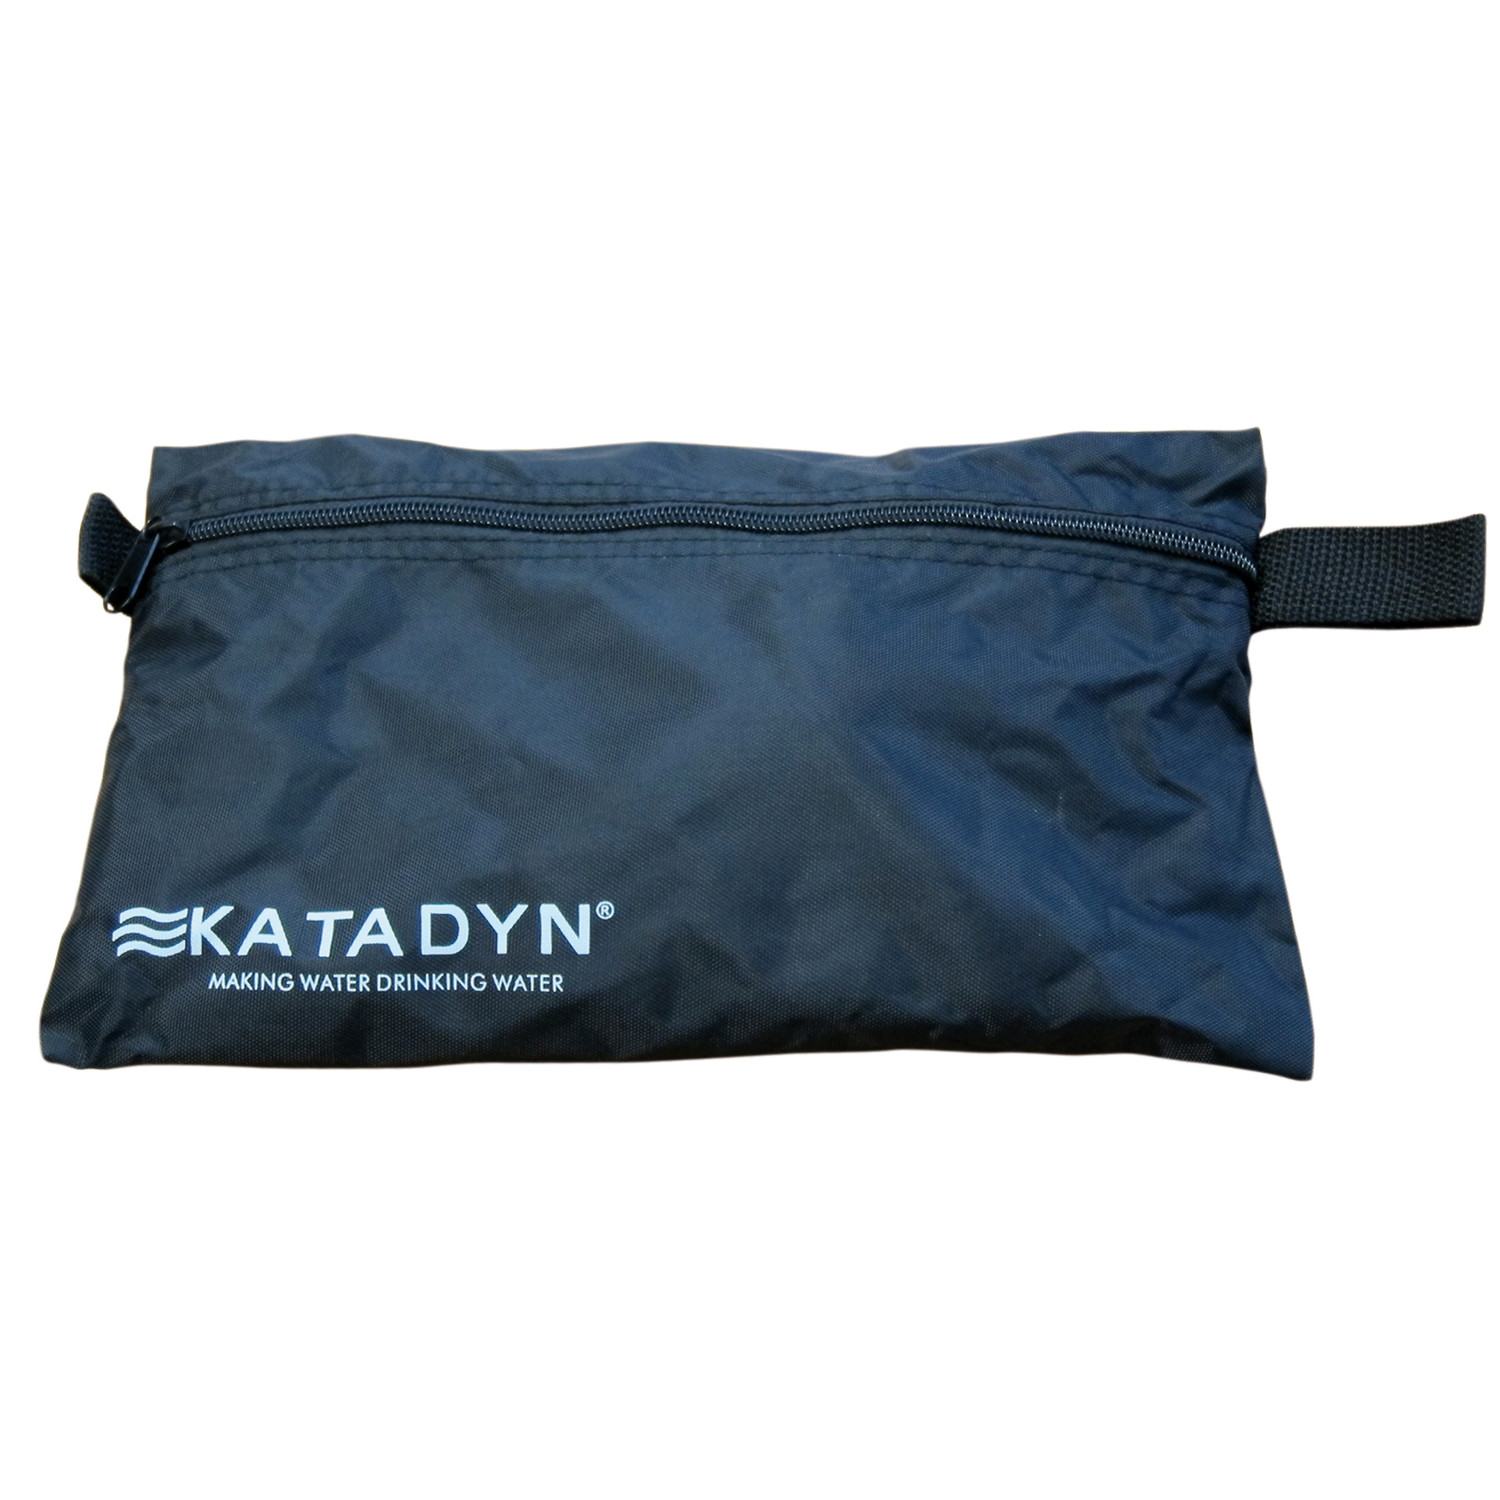 Katadyn Combi Transporttasche Ersatzteil für Wasserfilter schwarz Reißverschluss 